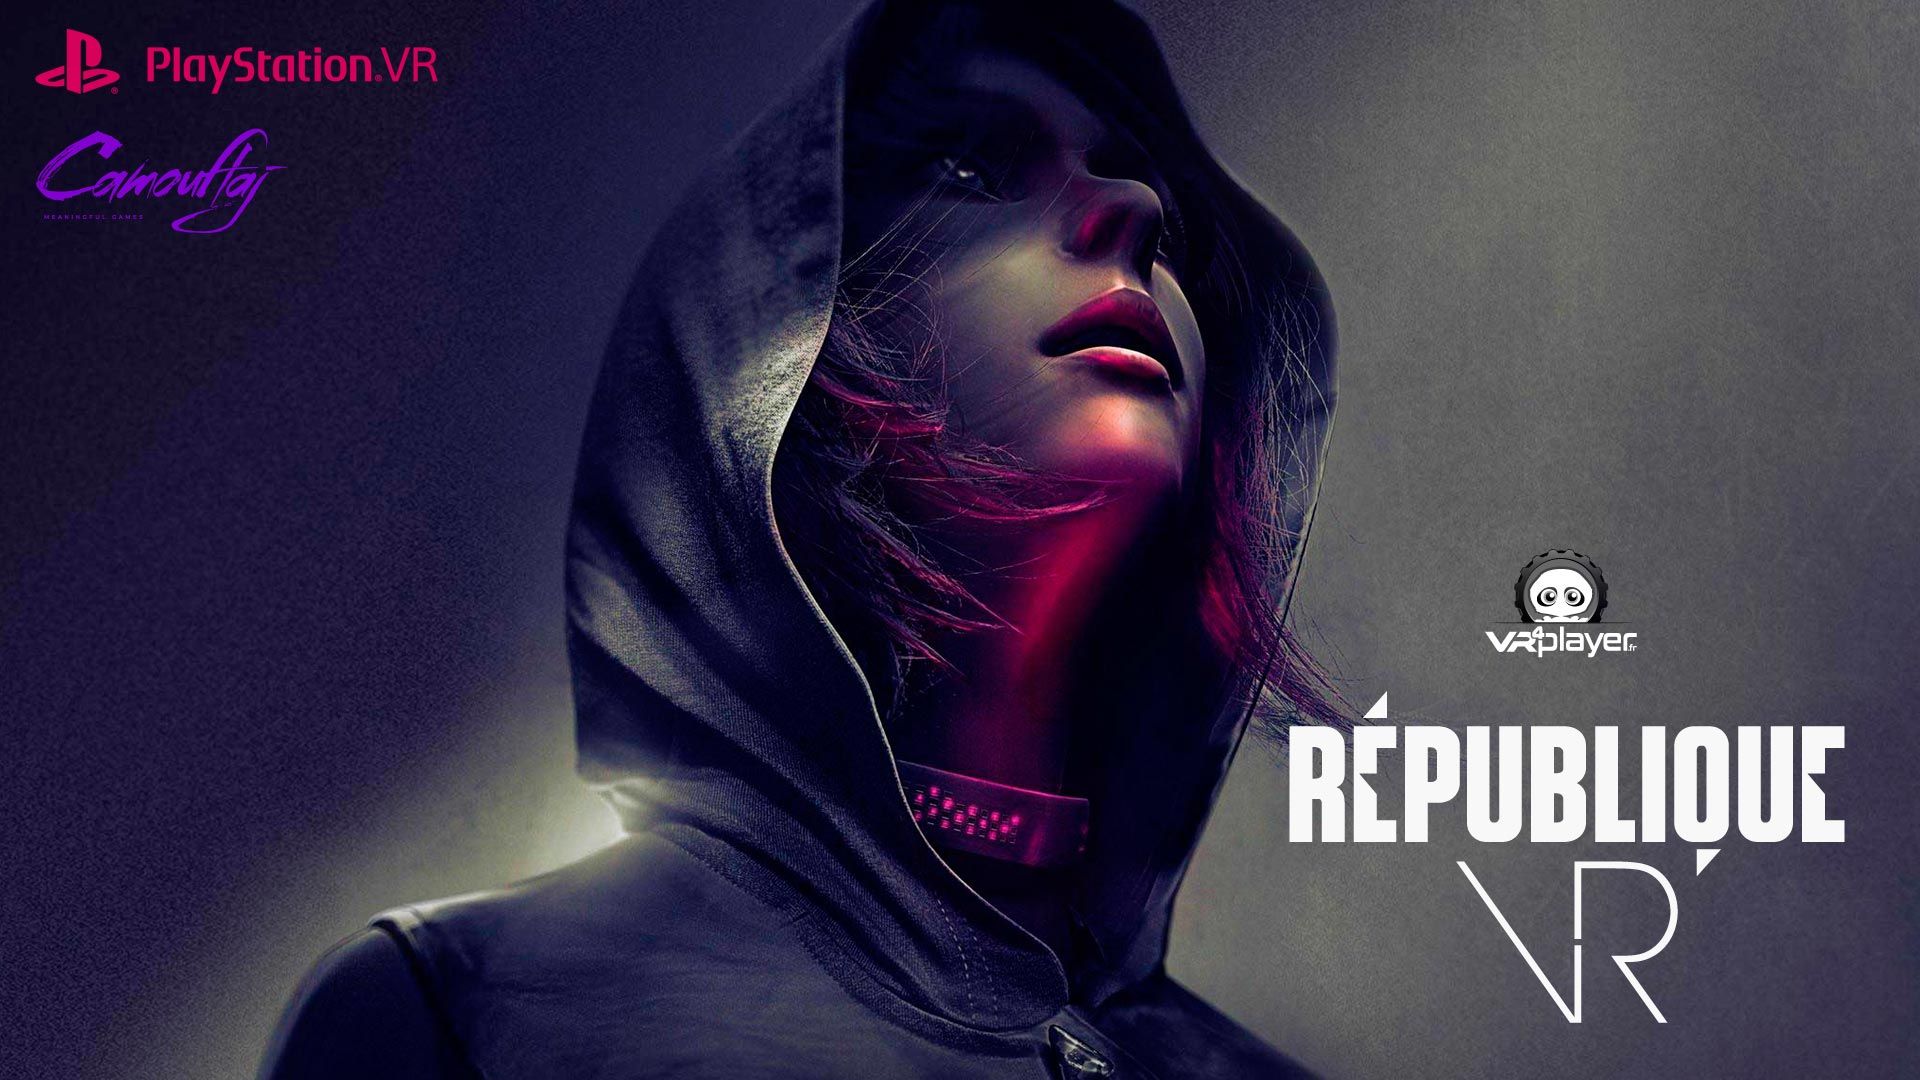 PlayStation VR : L'équipe de IronMan VR confirme République VR PSVR !